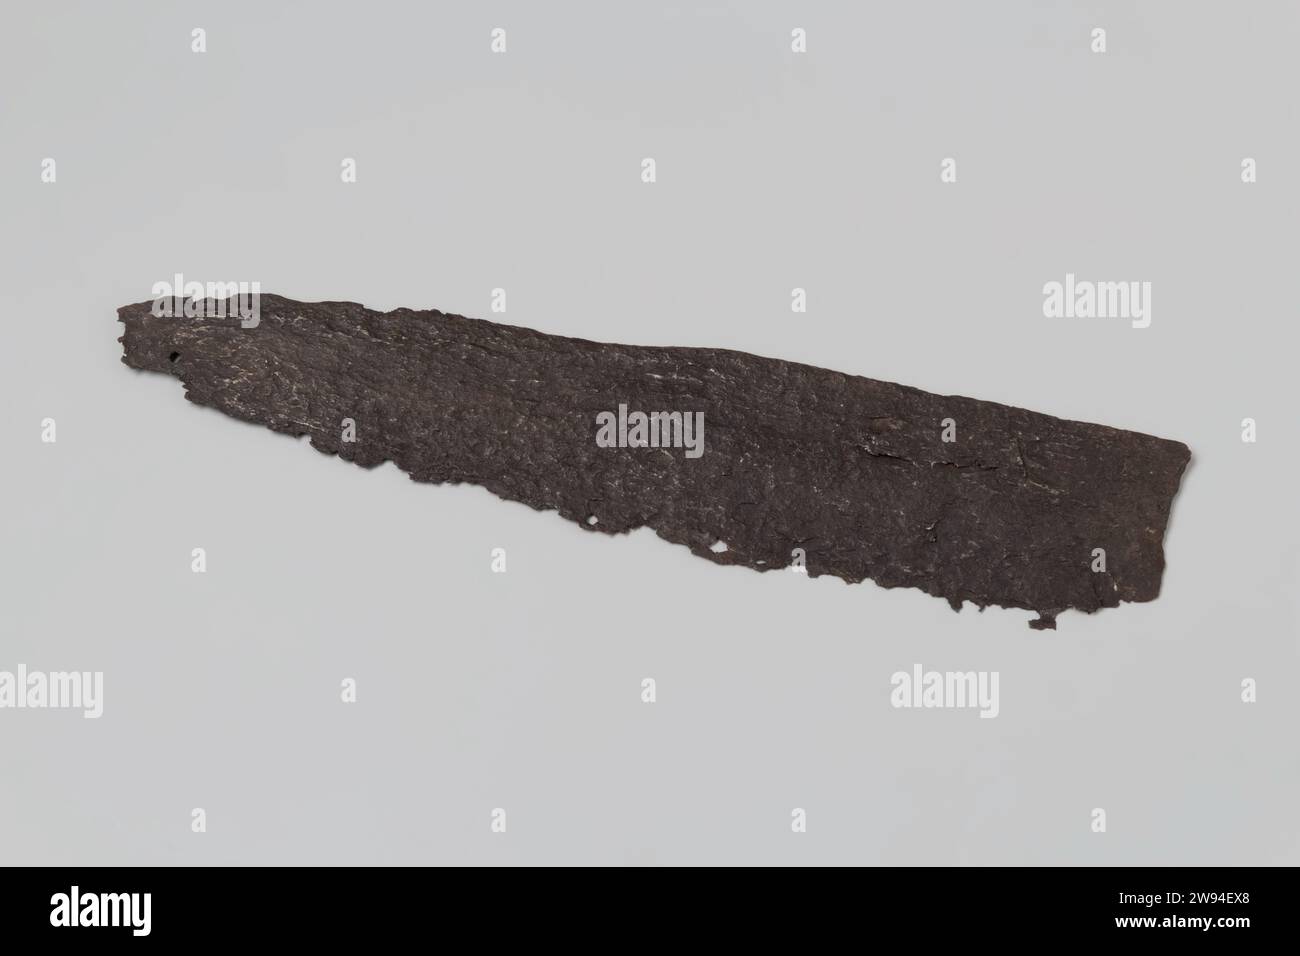 Frammento della lama di una taglierina da spiaggia, c. 1400 - c. 1950 coltello (utensile) la parte superiore della lama di un coltello da spiaggia. Ferro (metallo) Zeeuwsche Uytkyck Foto Stock